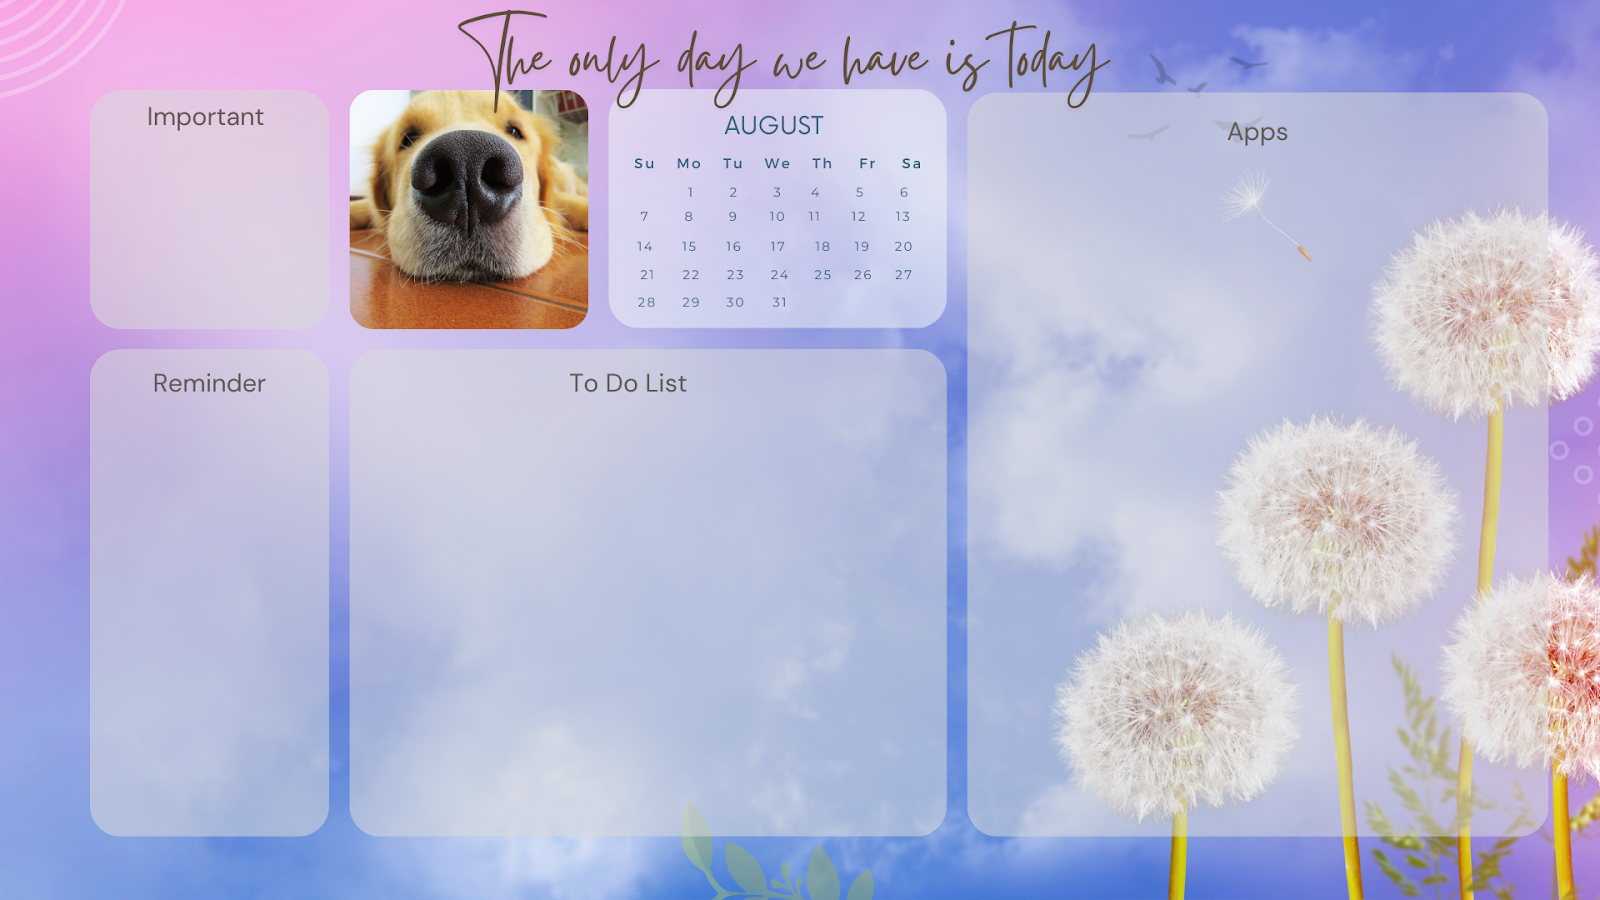 free desktop wallpaper organizer with august 2022 calendar featuring cute dog 5